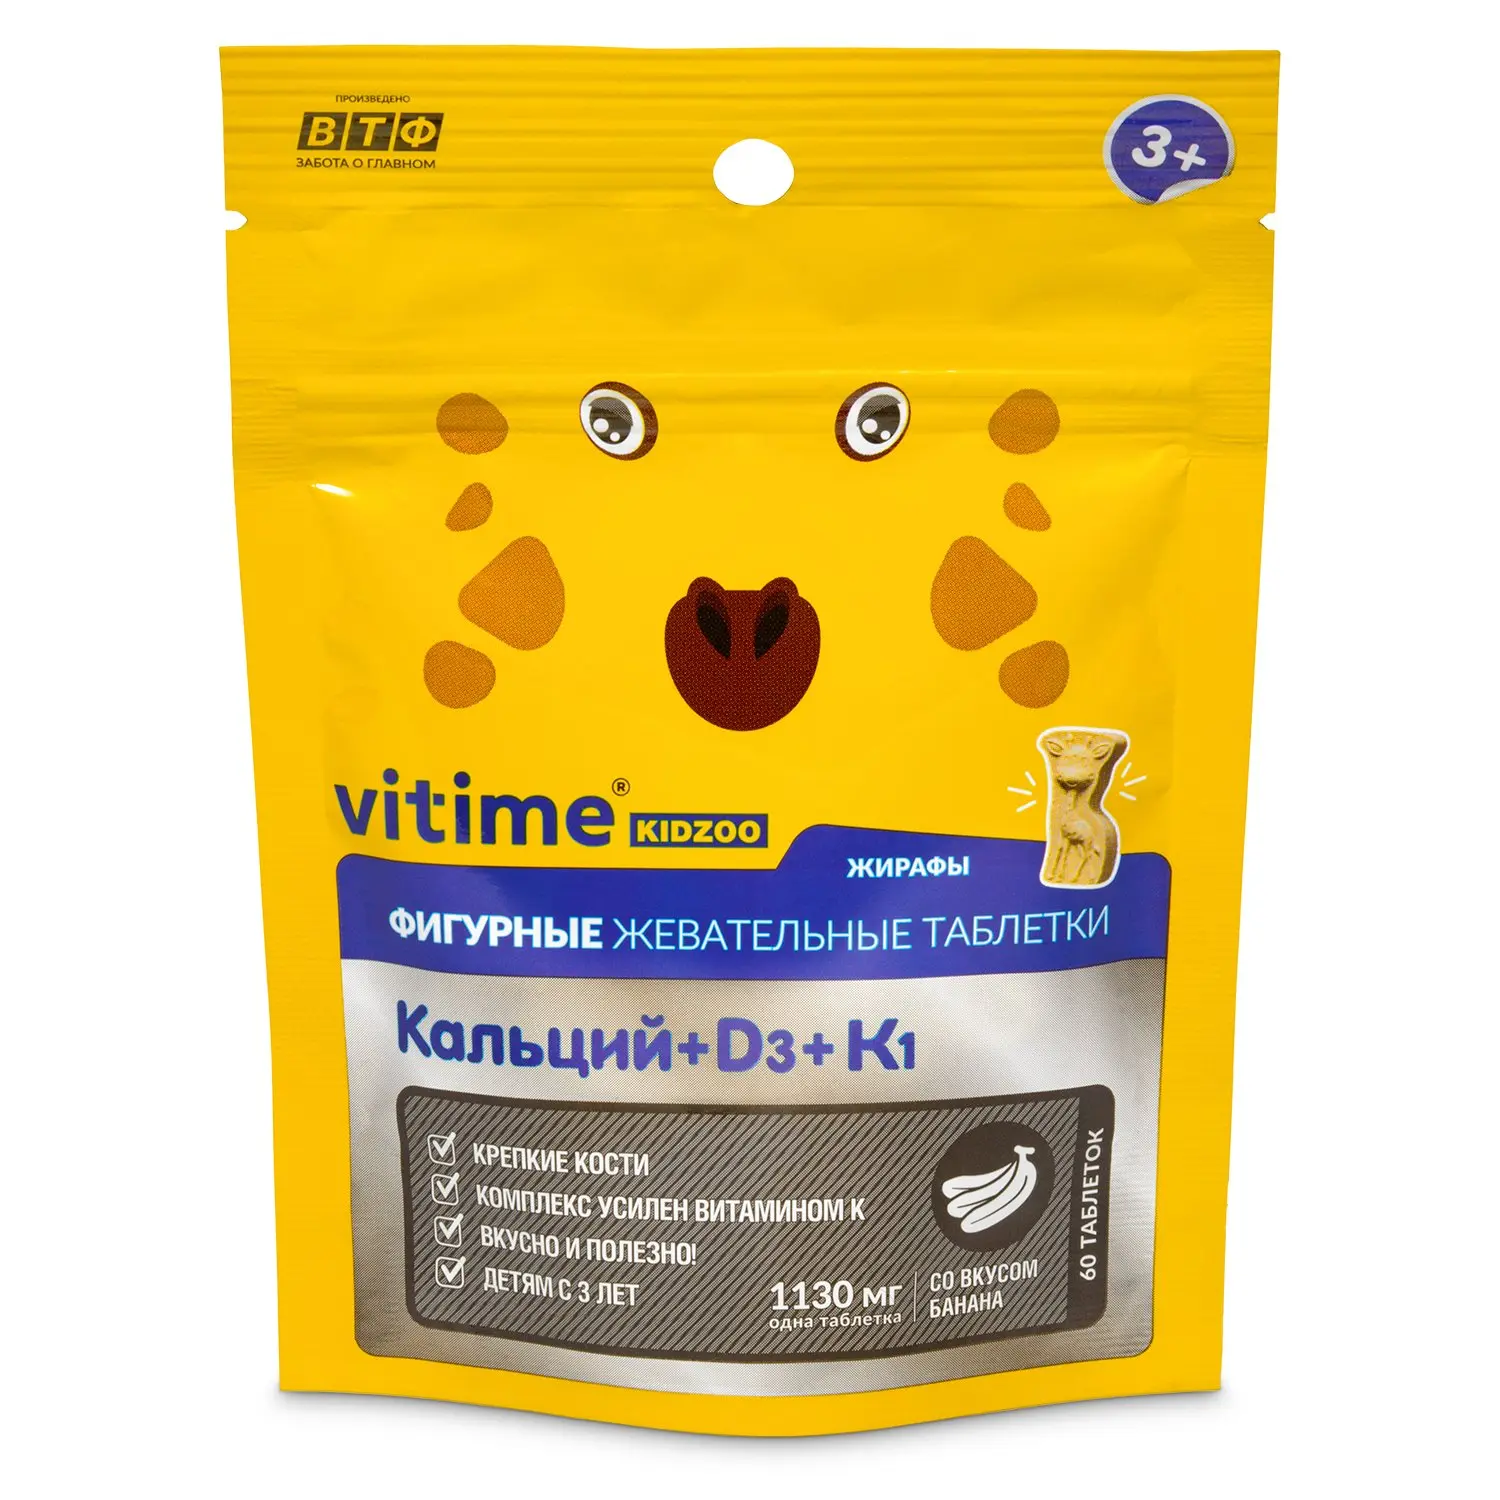 Витайм витамины. Vitime Kidzoo d3. Vitime Kidzoo кальций + d3 + к1. Витаминно-минеральный комплекс Витайм Кидзу. Vitime Kidzoo Омега 3.